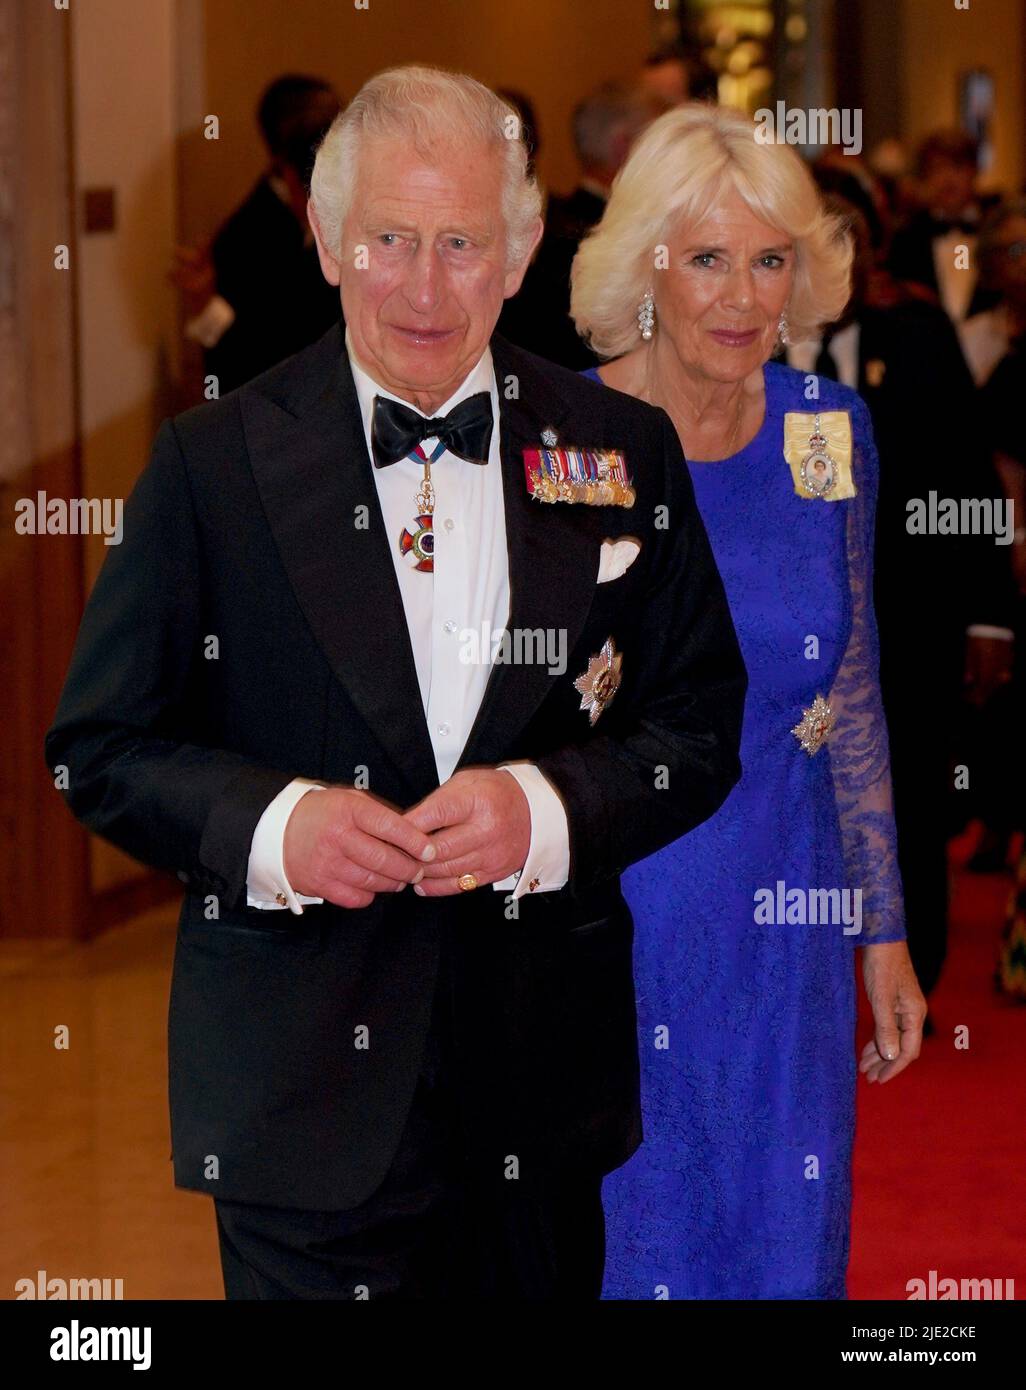 Le prince de Galles et la duchesse de Cornwall arrivent pour le dîner des chefs de gouvernement du Commonwealth à l'hôtel Marriott de Kigali, au Rwanda. Date de la photo: Vendredi 24 juin 2022. Banque D'Images